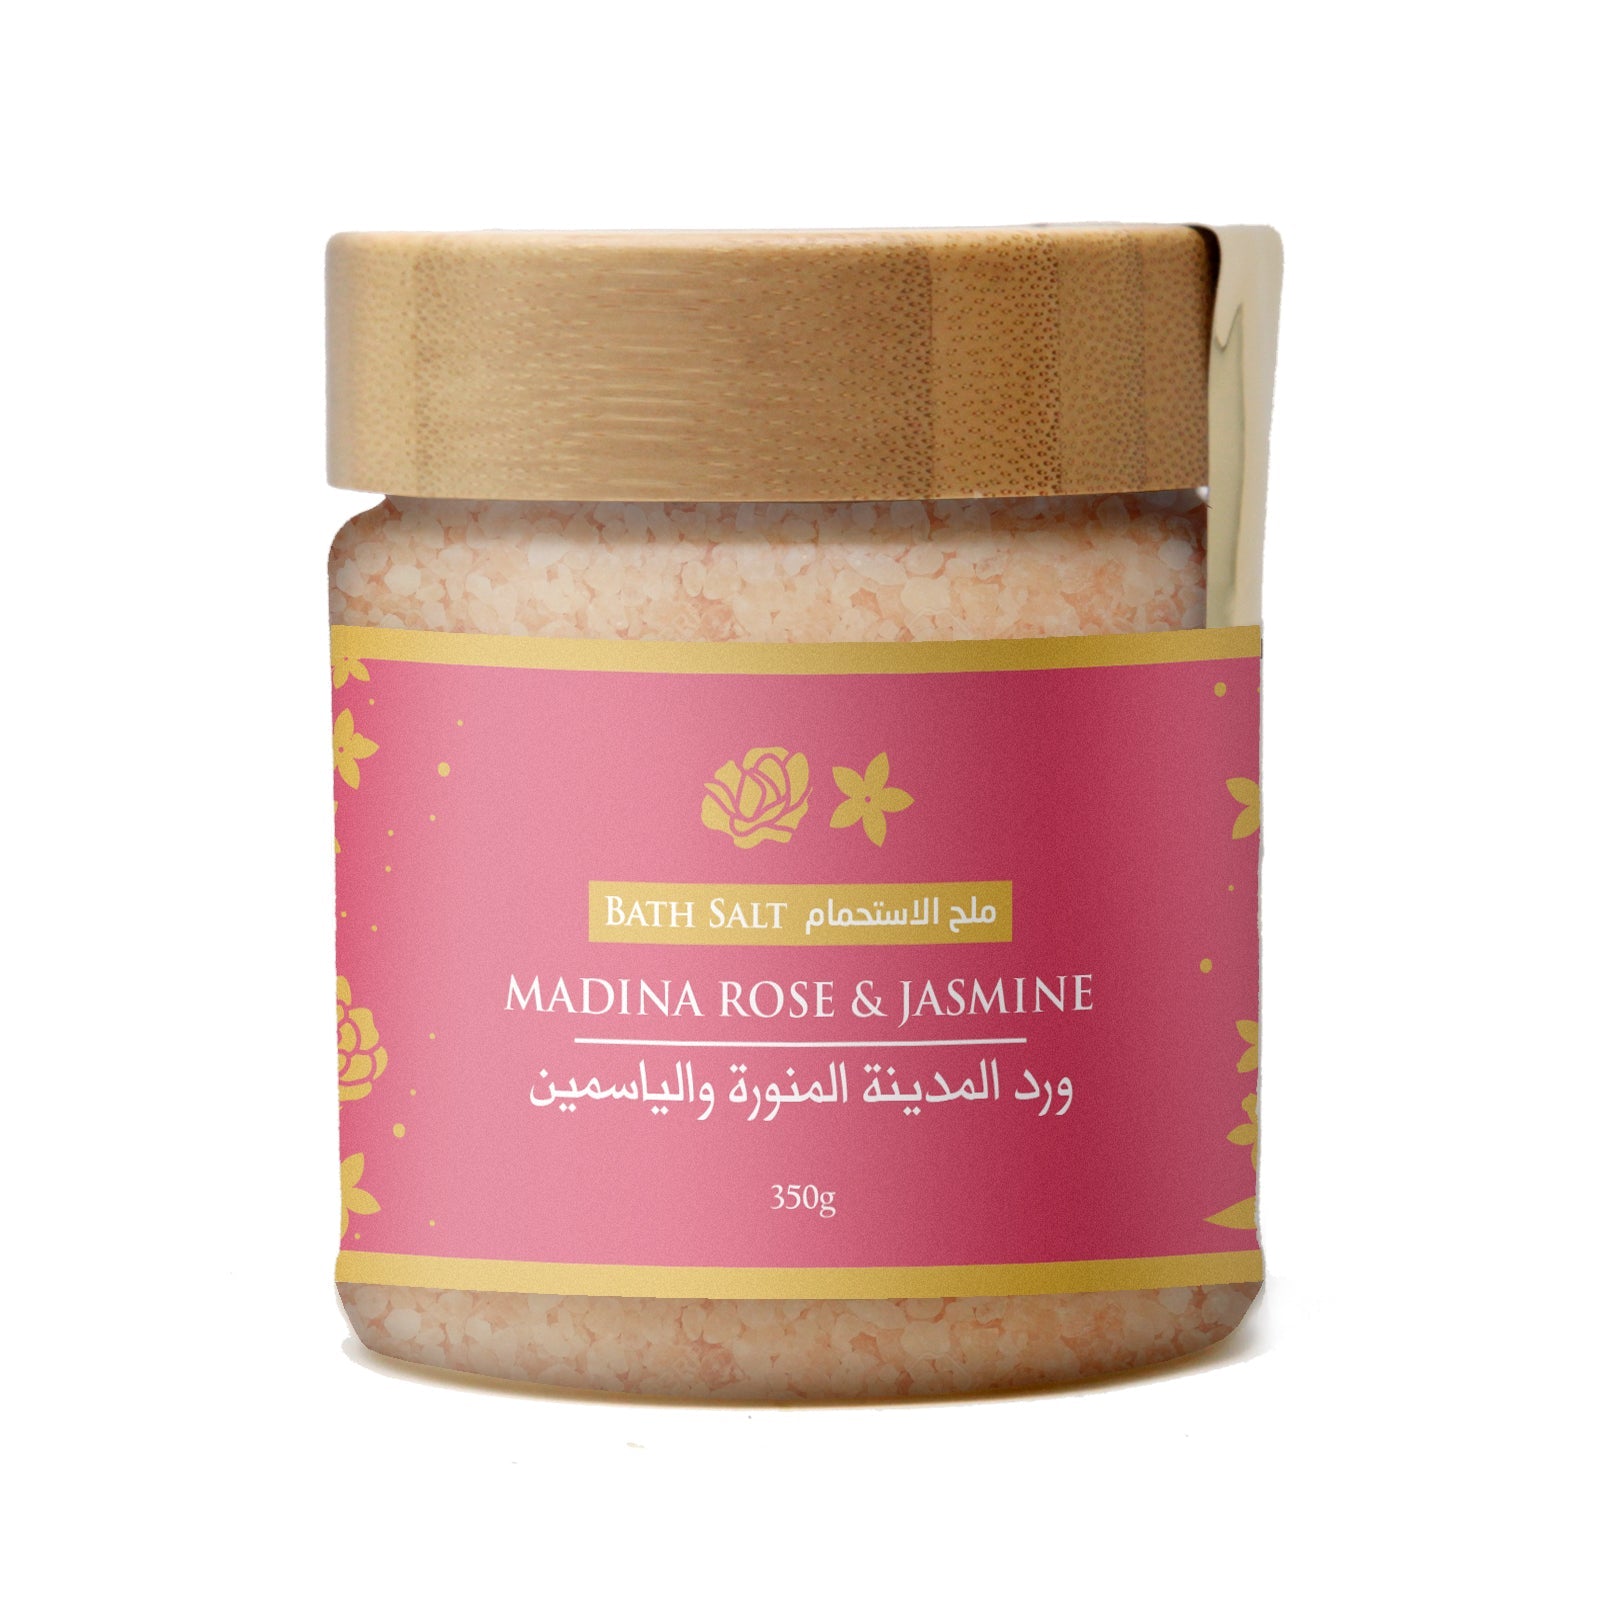 Madina Rose and Jasmine Bath Salt - 350g